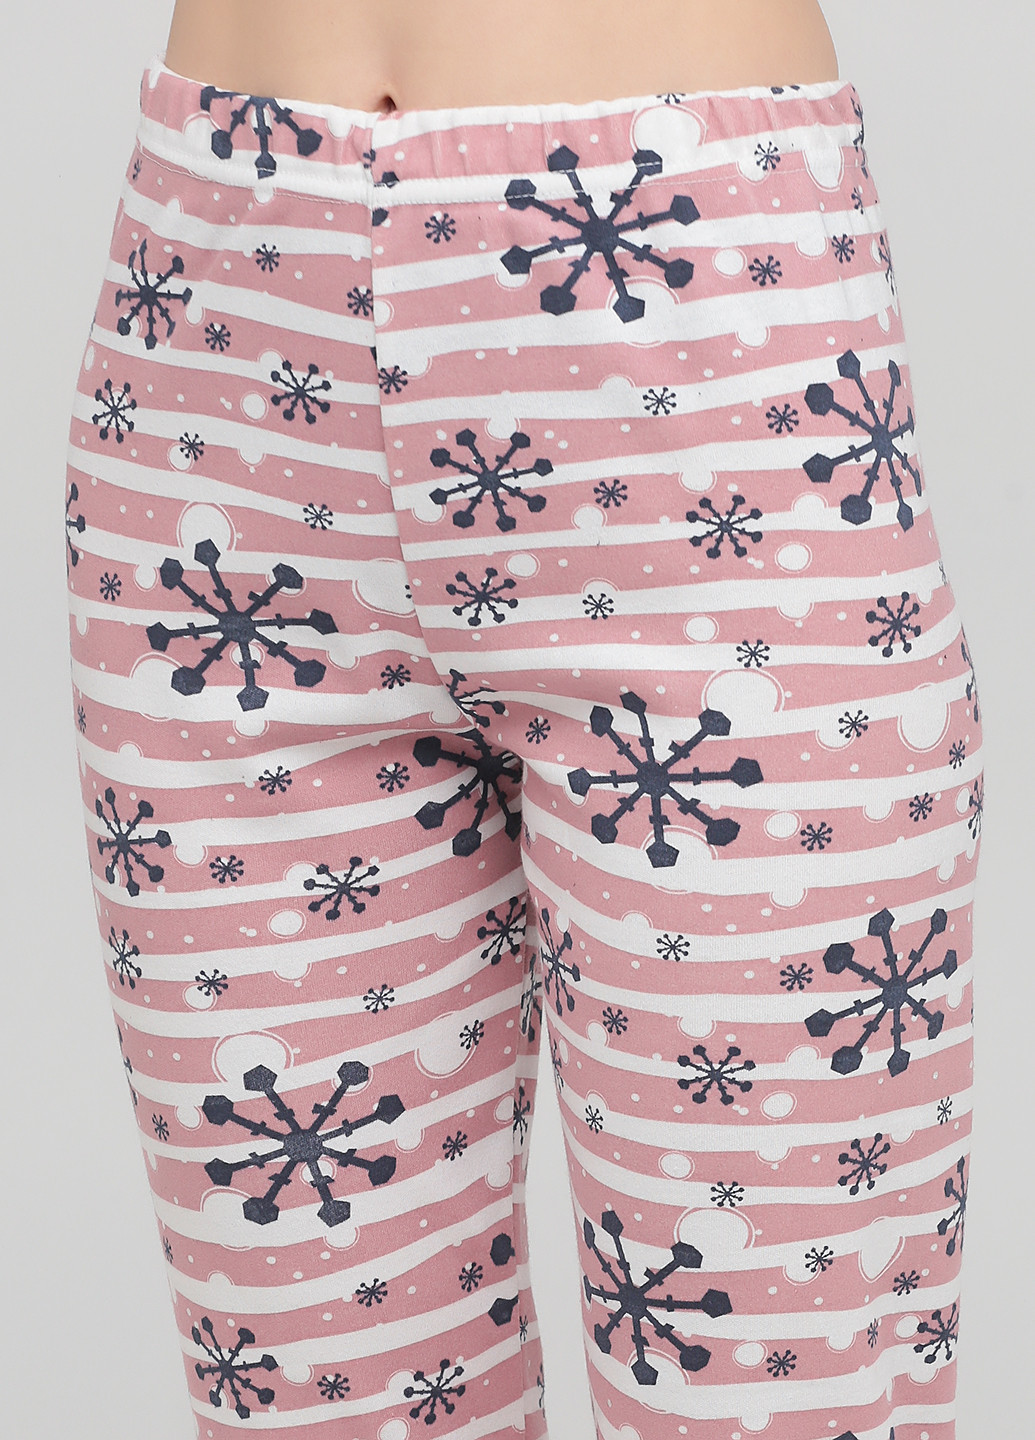 Комбинированная всесезон пижама (лонгслив, брюки) лонгслив + брюки Fawn